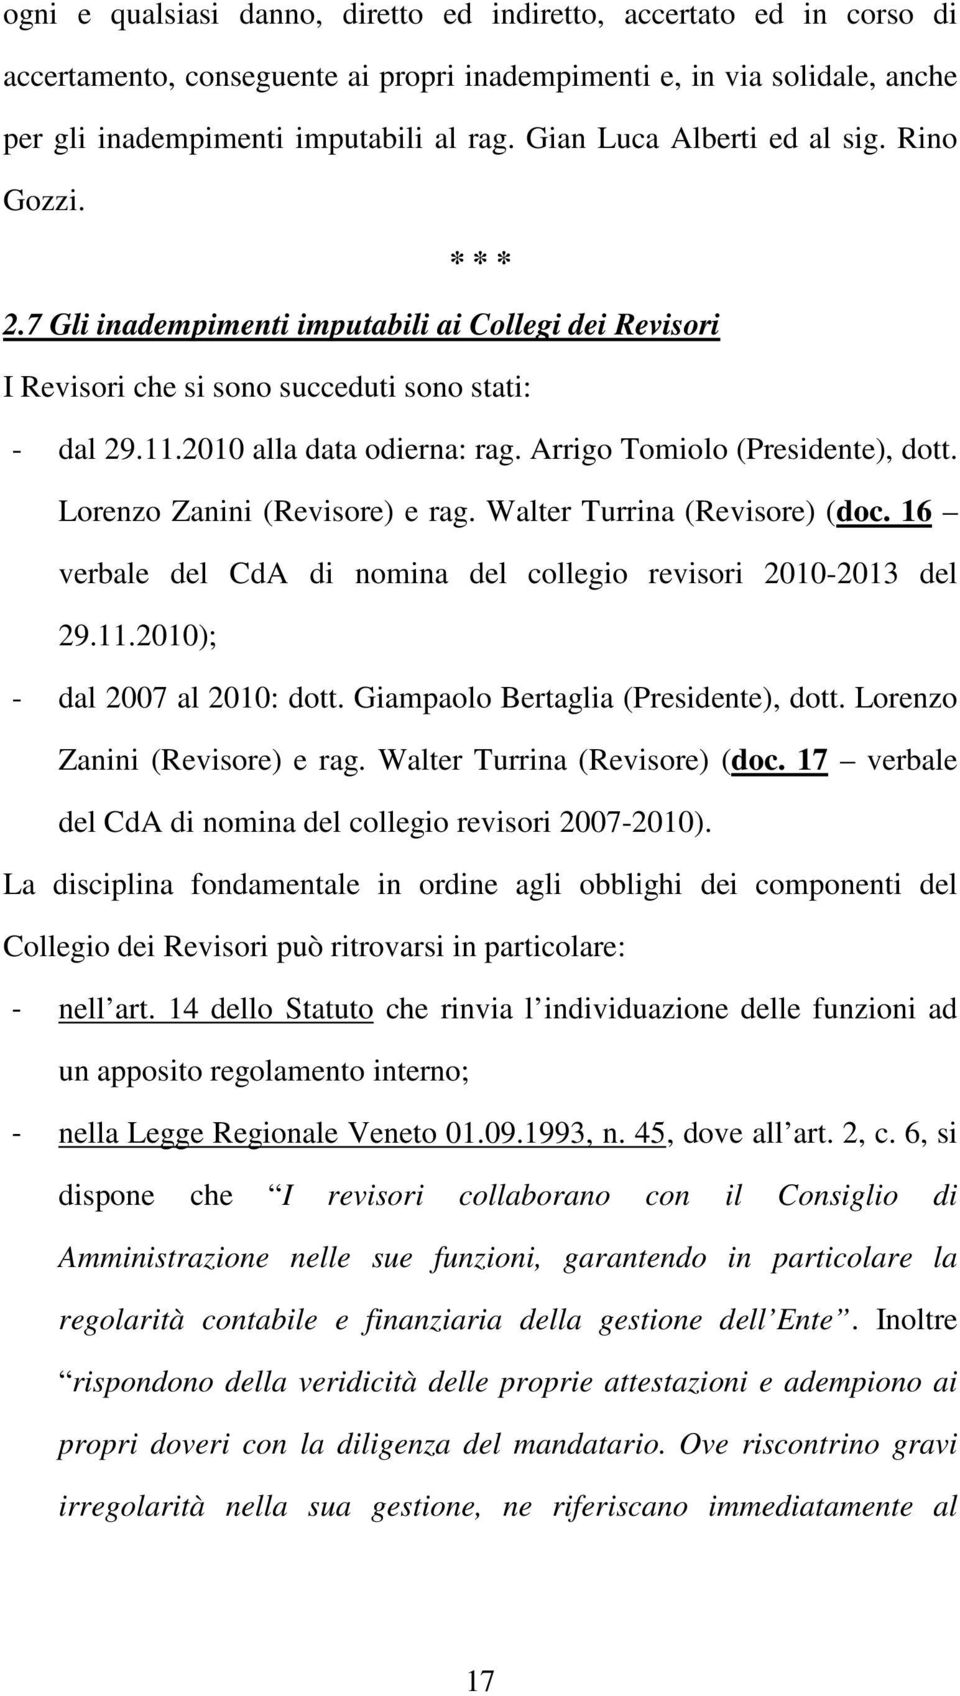 Arrigo Tomiolo (Presidente), dott. Lorenzo Zanini (Revisore) e rag. Walter Turrina (Revisore) (doc. 16 verbale del CdA di nomina del collegio revisori 2010-2013 del 29.11.